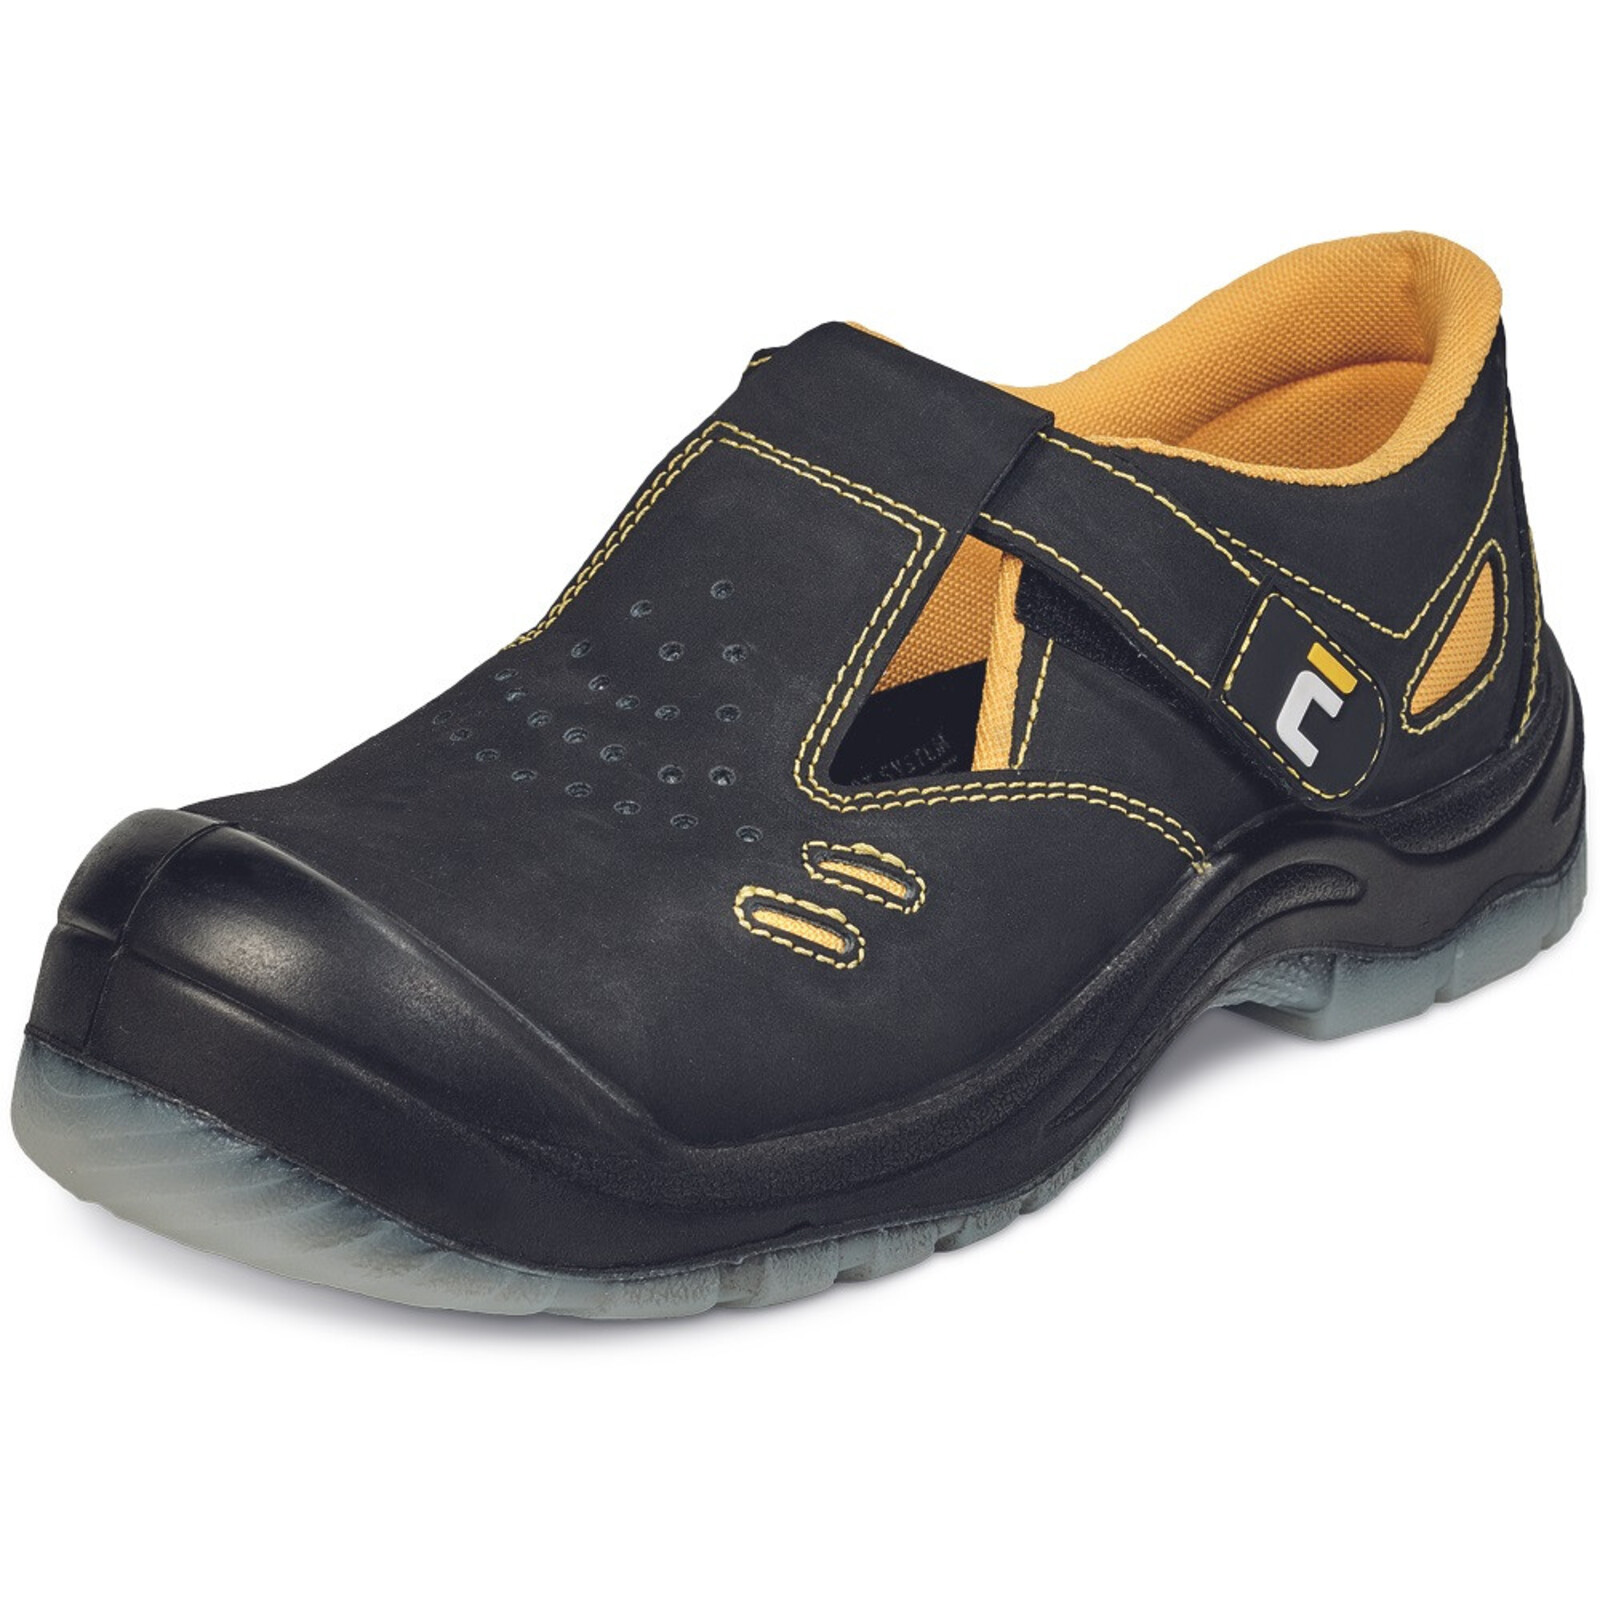 Bezpečnostné sandále Cerva BK TPU MF S1P SRC - veľkosť: 44, farba: čierna/žltá